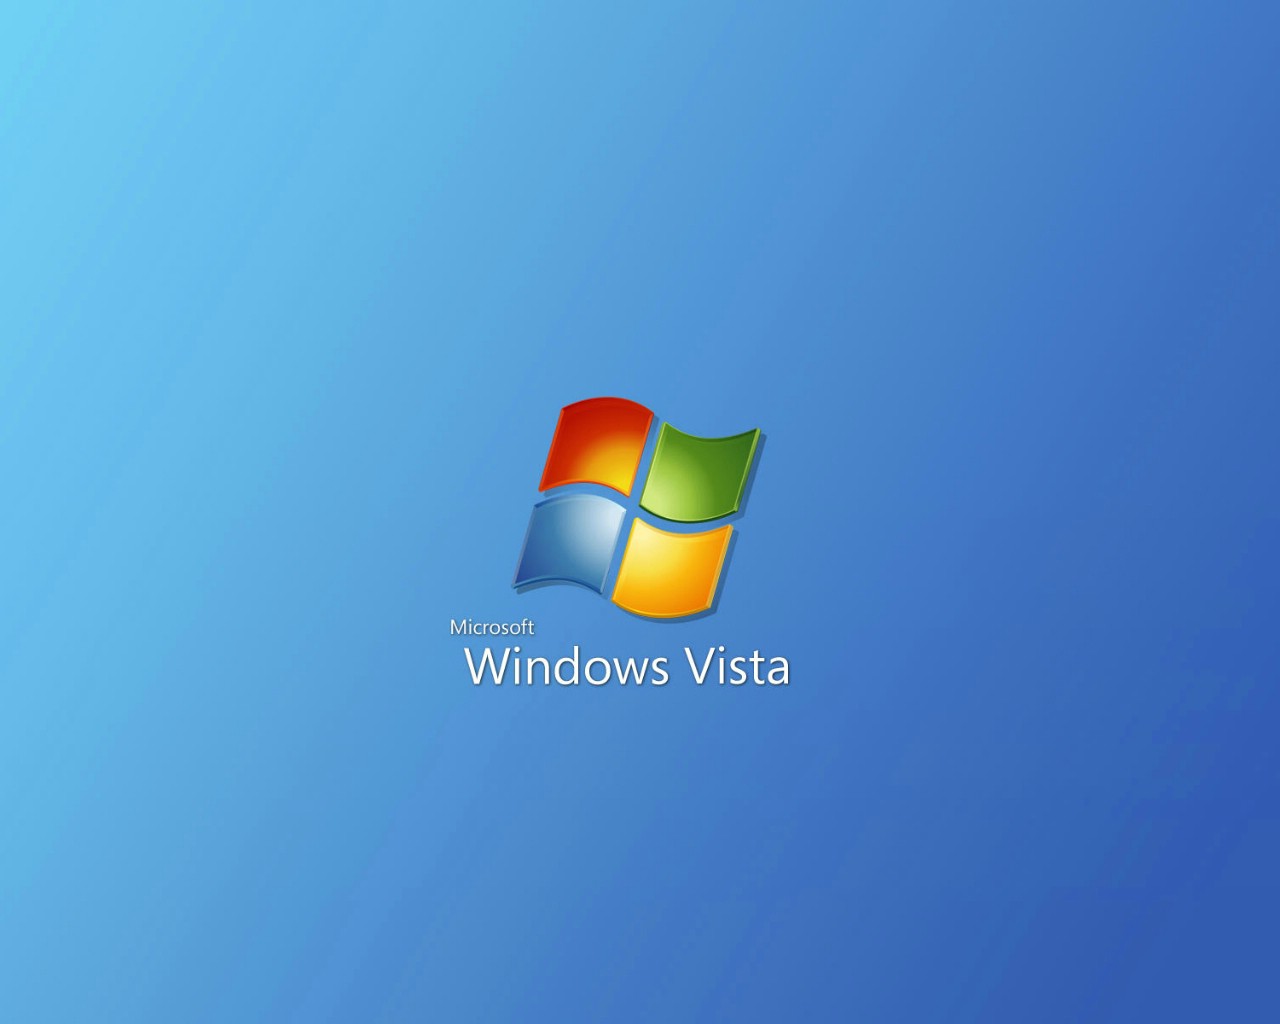 壁纸1280x1024Windows Vista精美壁纸合集壁纸 Windows Vista精美壁纸合集壁纸 Windows Vista精美壁纸合集图片 Windows Vista精美壁纸合集素材 创意壁纸 创意图库 创意图片素材桌面壁纸